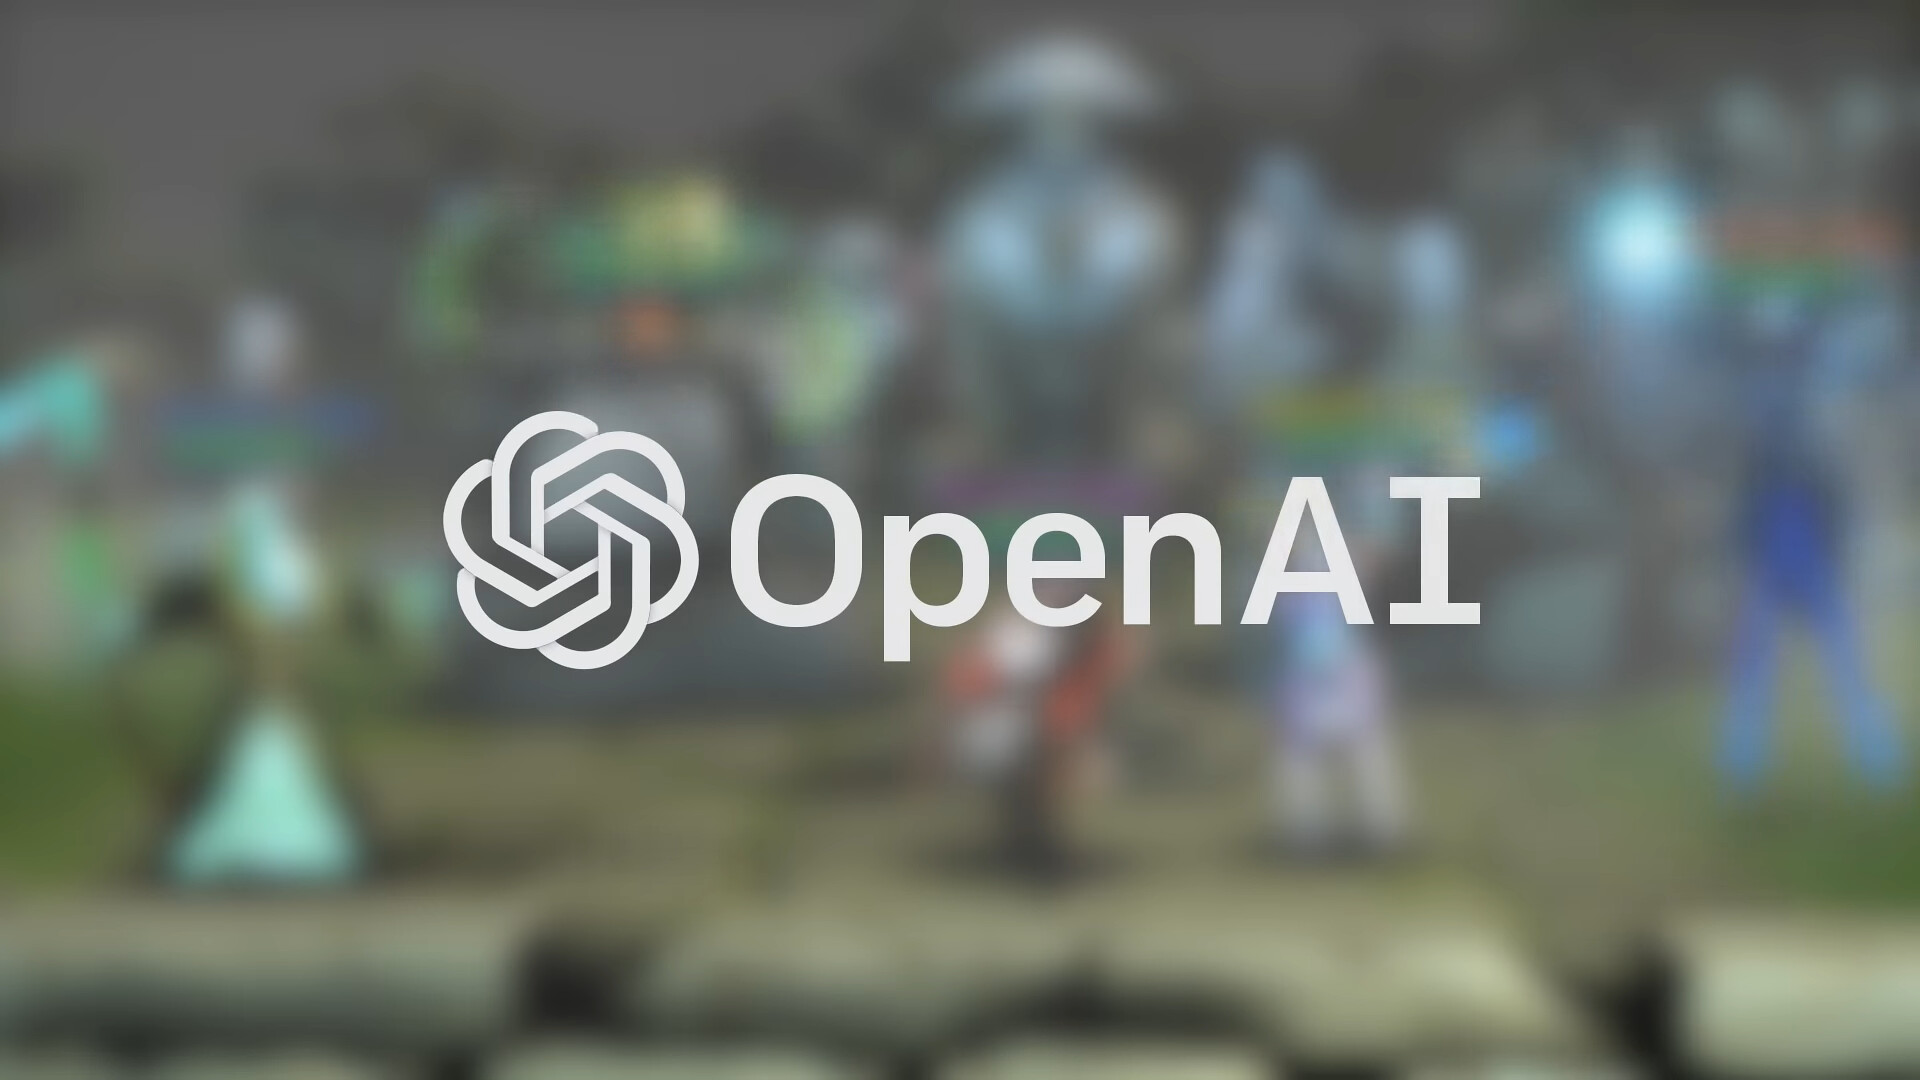 OpenAI podría presentar su propio motor de búsqueda para rivalizar con Google este 9 de mayo